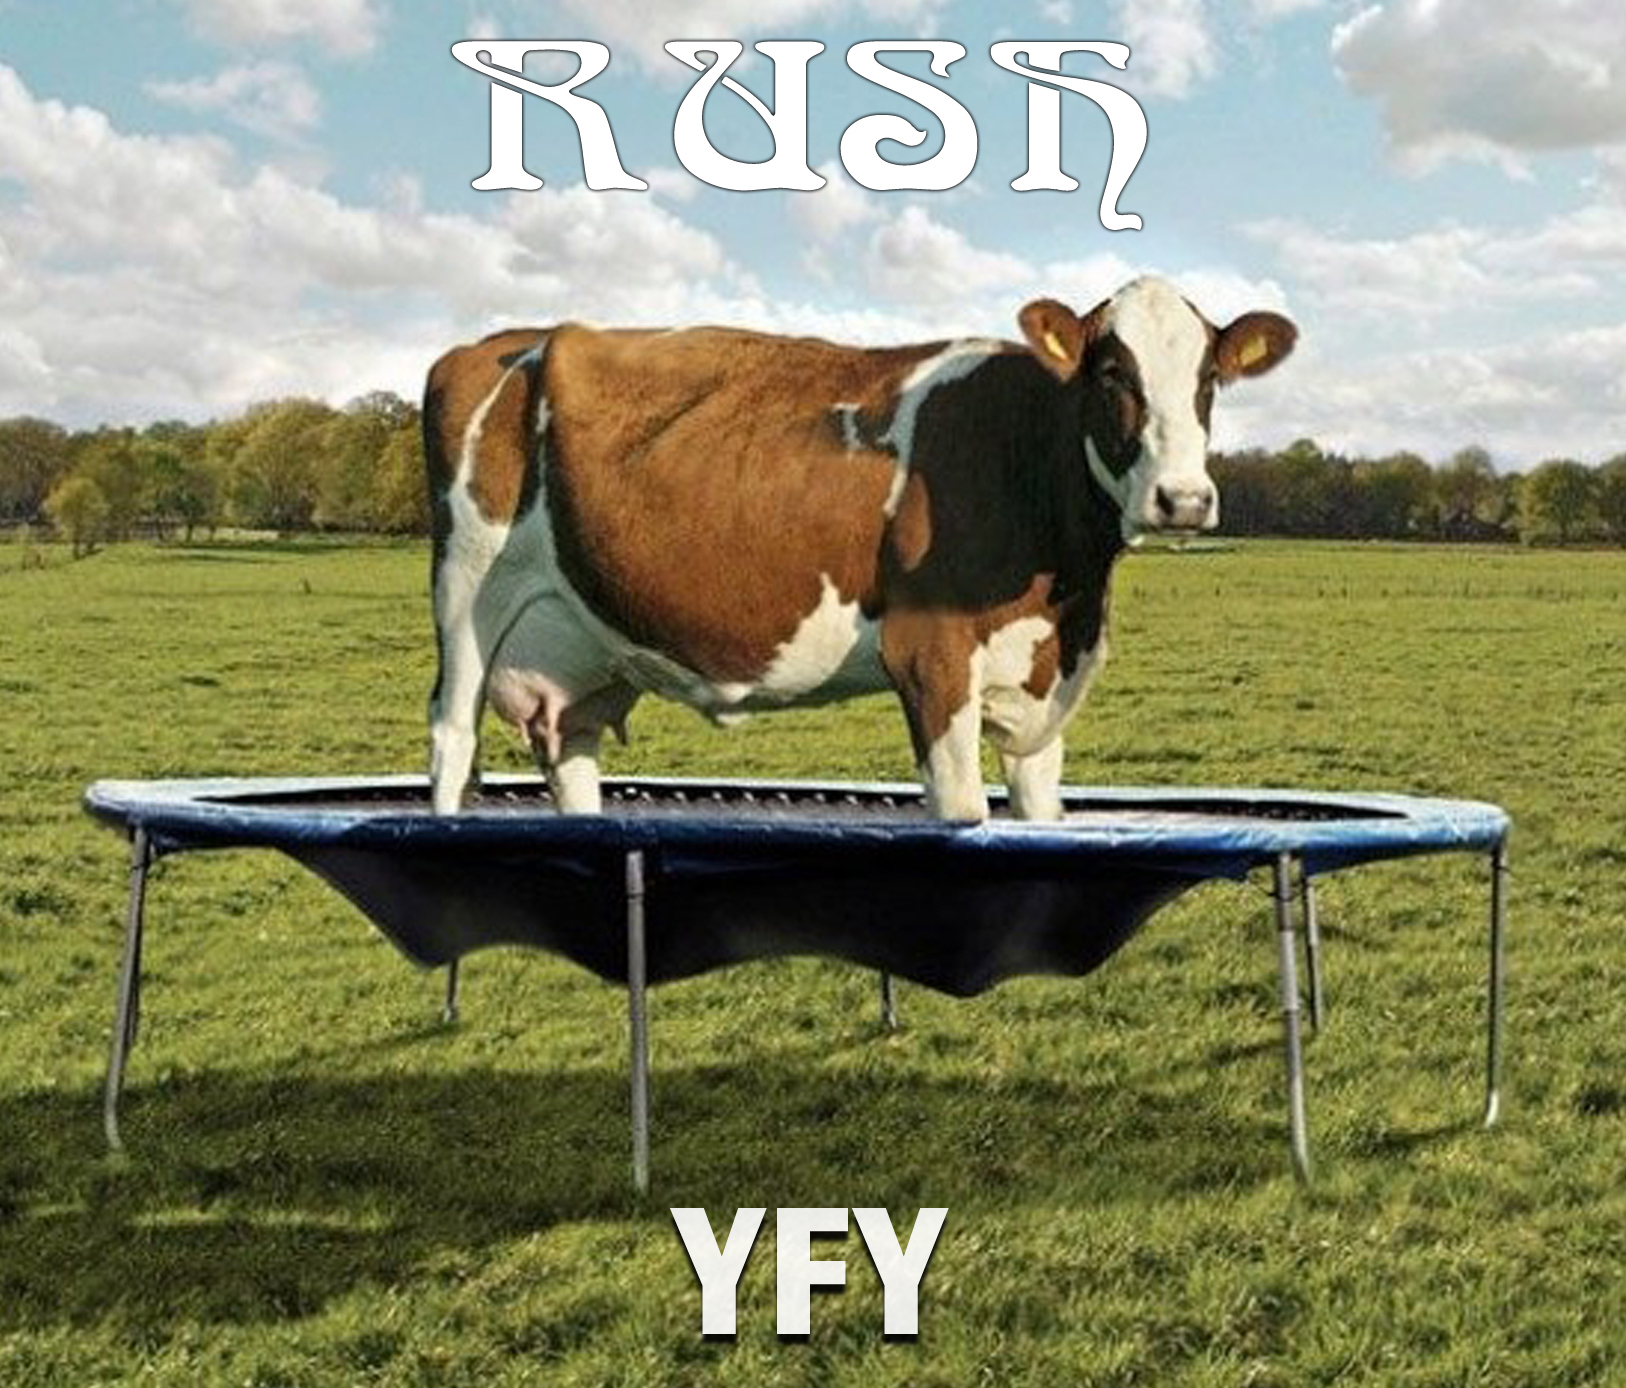 Rush - YFY